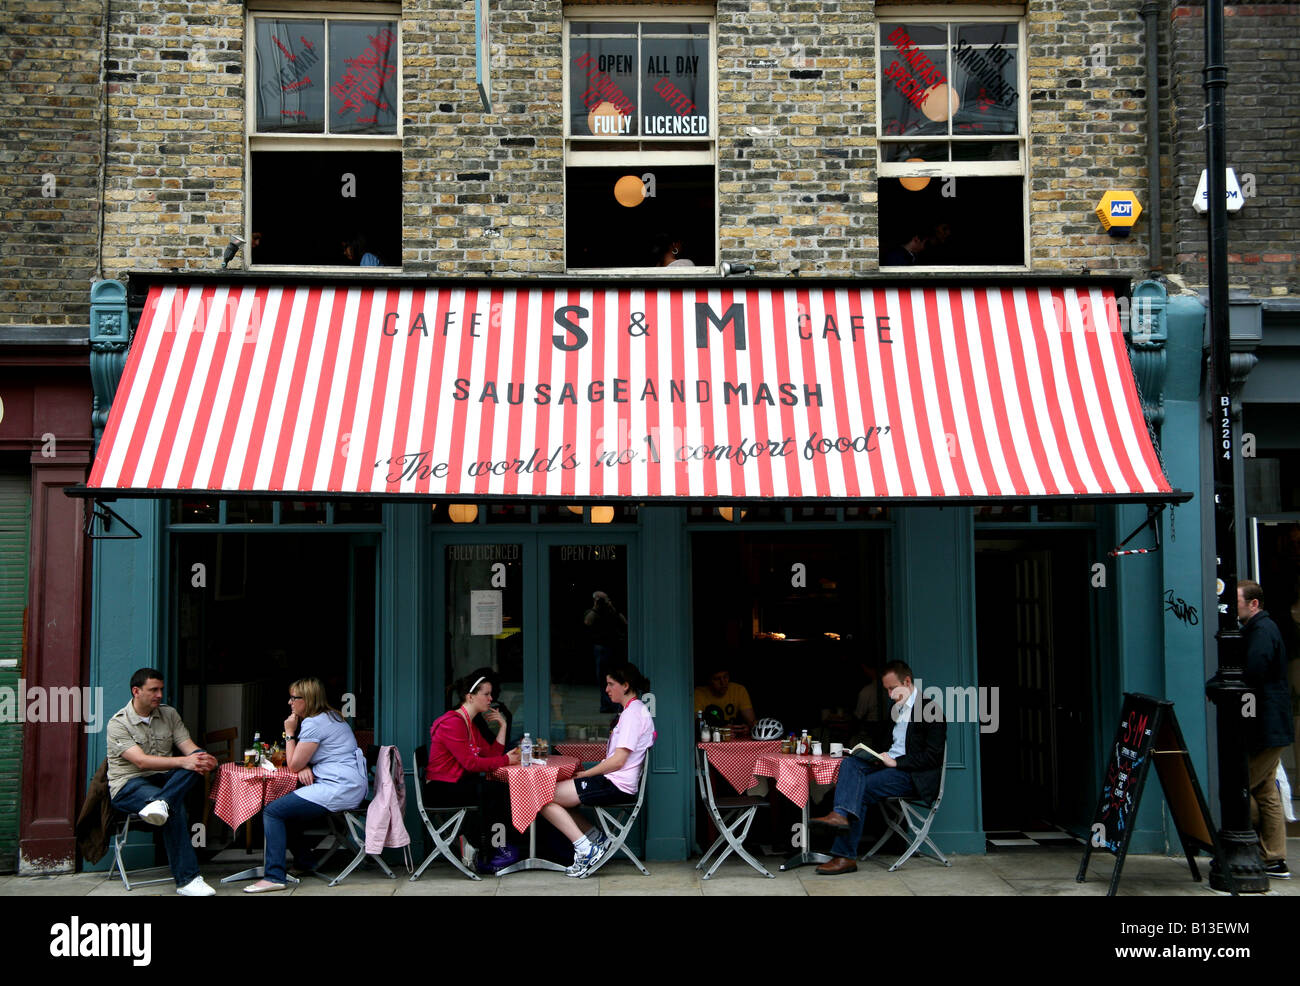 S & M saucisse et mash restaurant à Londres Spitalfields Banque D'Images